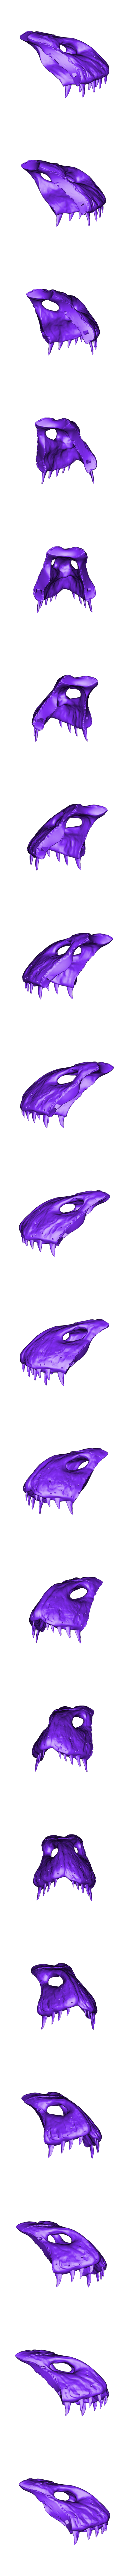 Skull Part 1.obj Download OBJ file Deinonychus Skull • 3D print design, arric